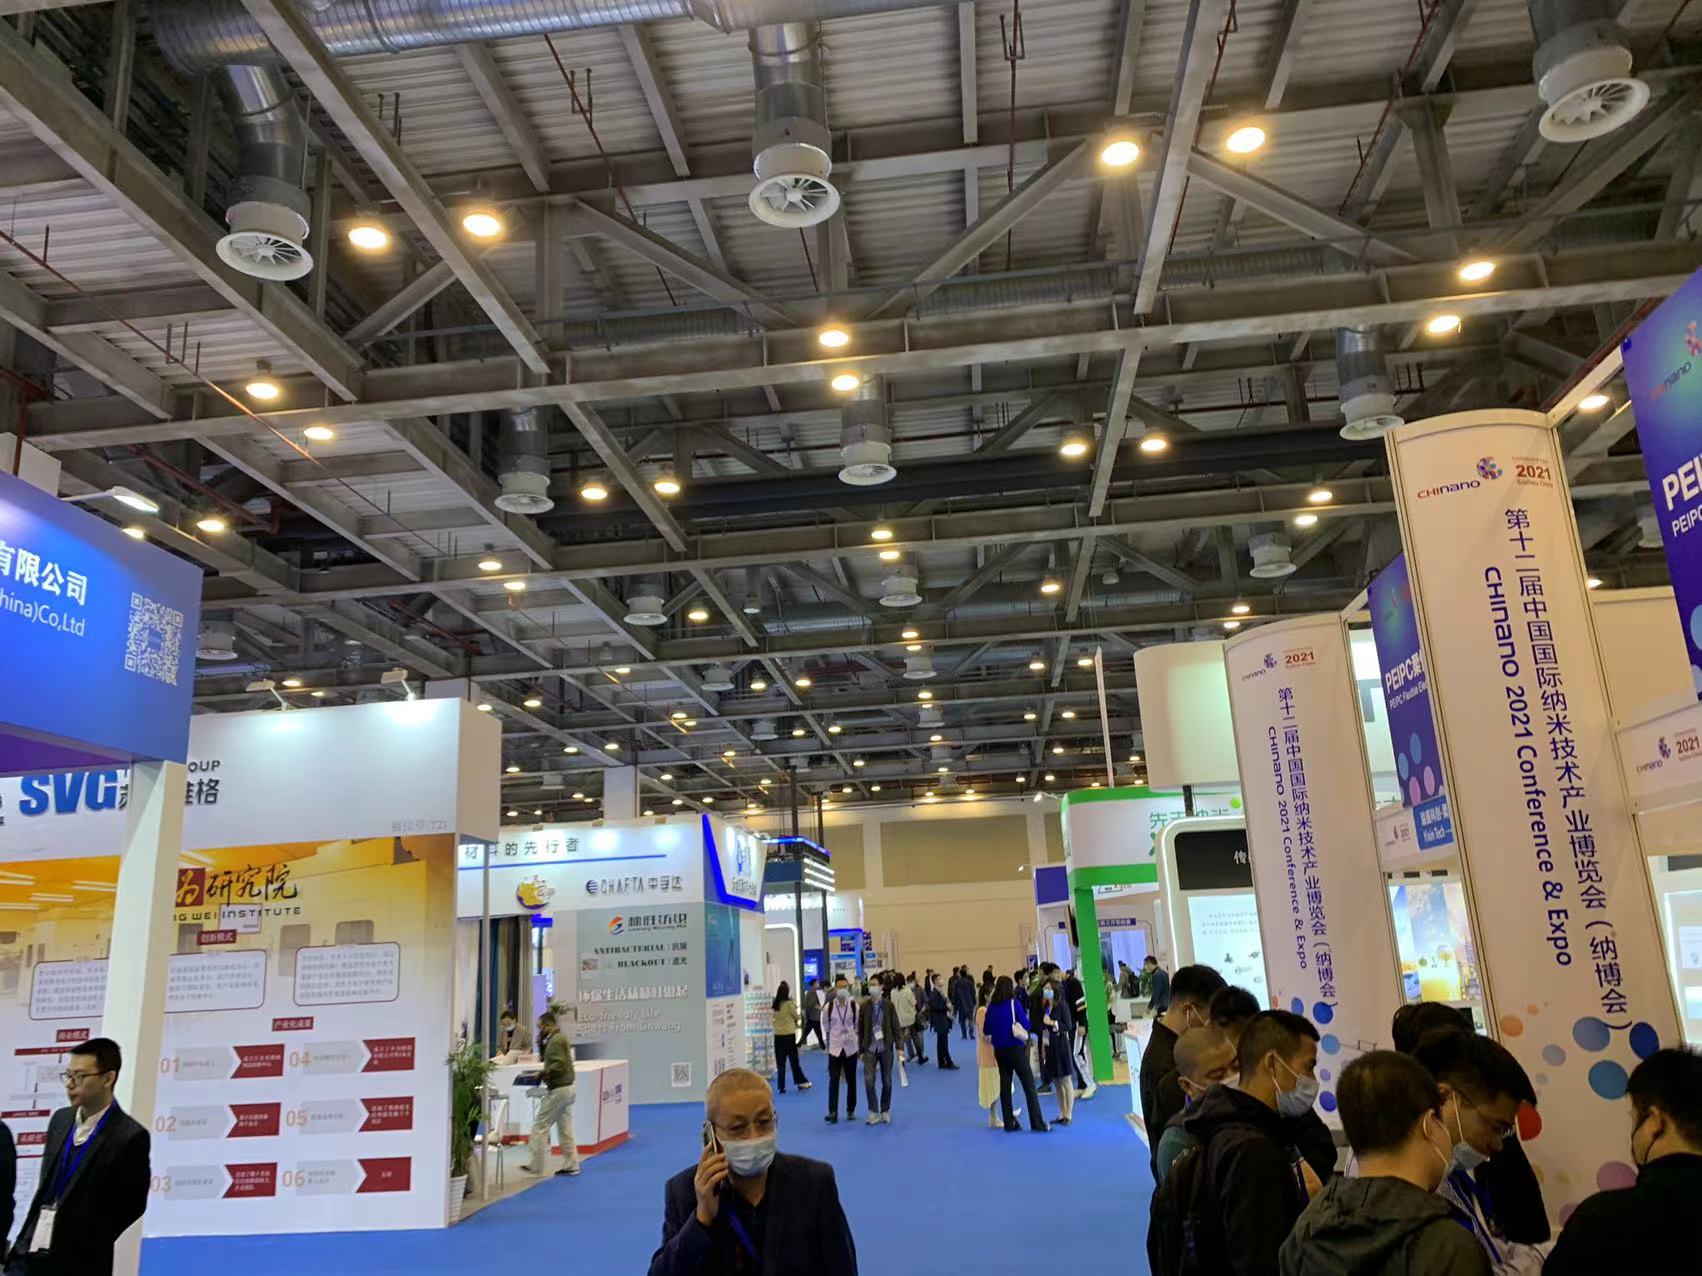 2021年10月27日第十二屆中國國際納米技術產業博覽會在蘇州召開 恩福賽受邀出展